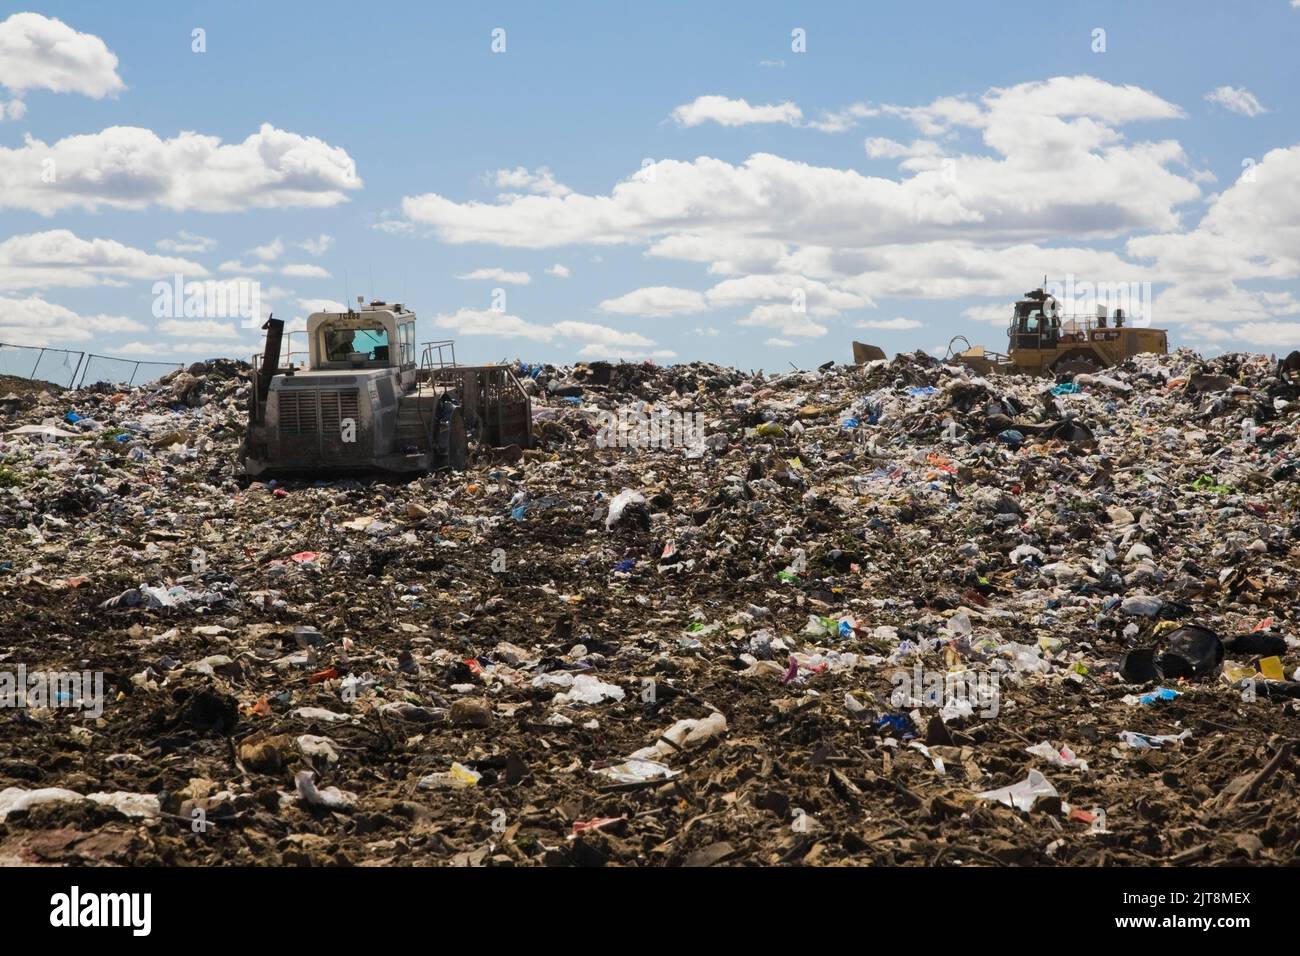 Des machines lourdes dispersent et compacent les débris et les déchets rejetés sur le site de gestion des déchets. Banque D'Images